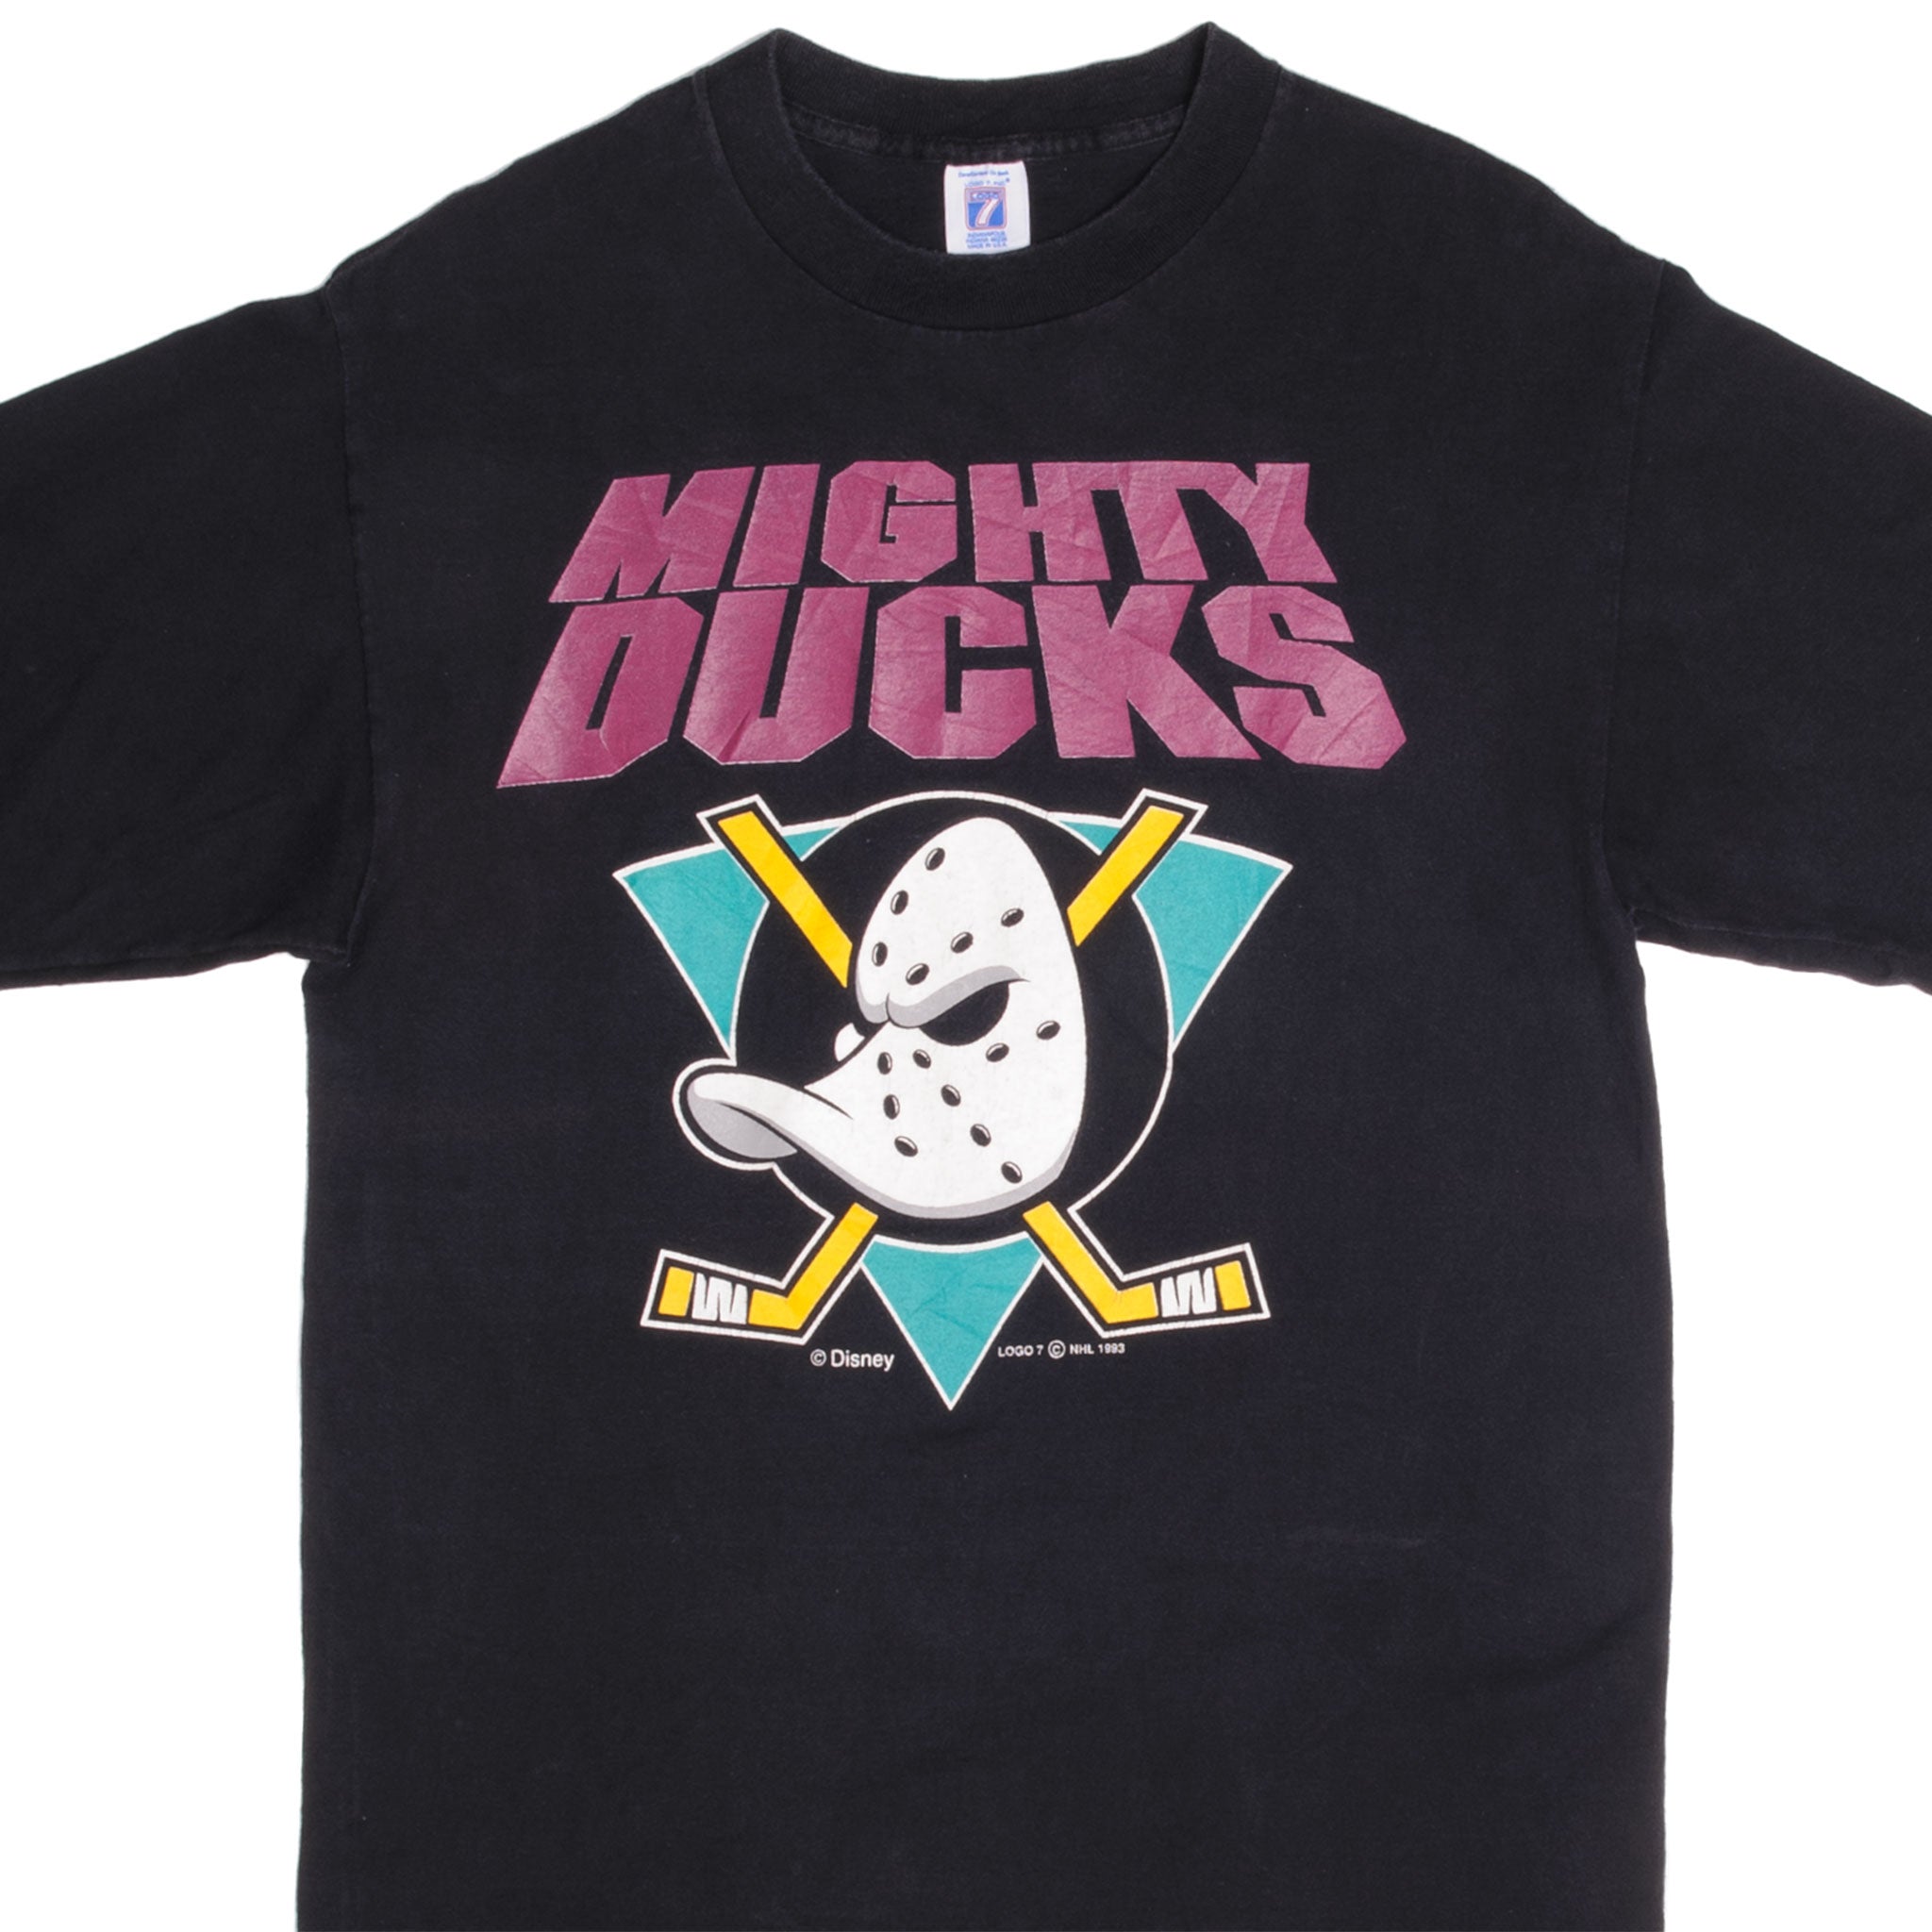 NHL-Trikot Nike Mighty Ducks Anaheim L